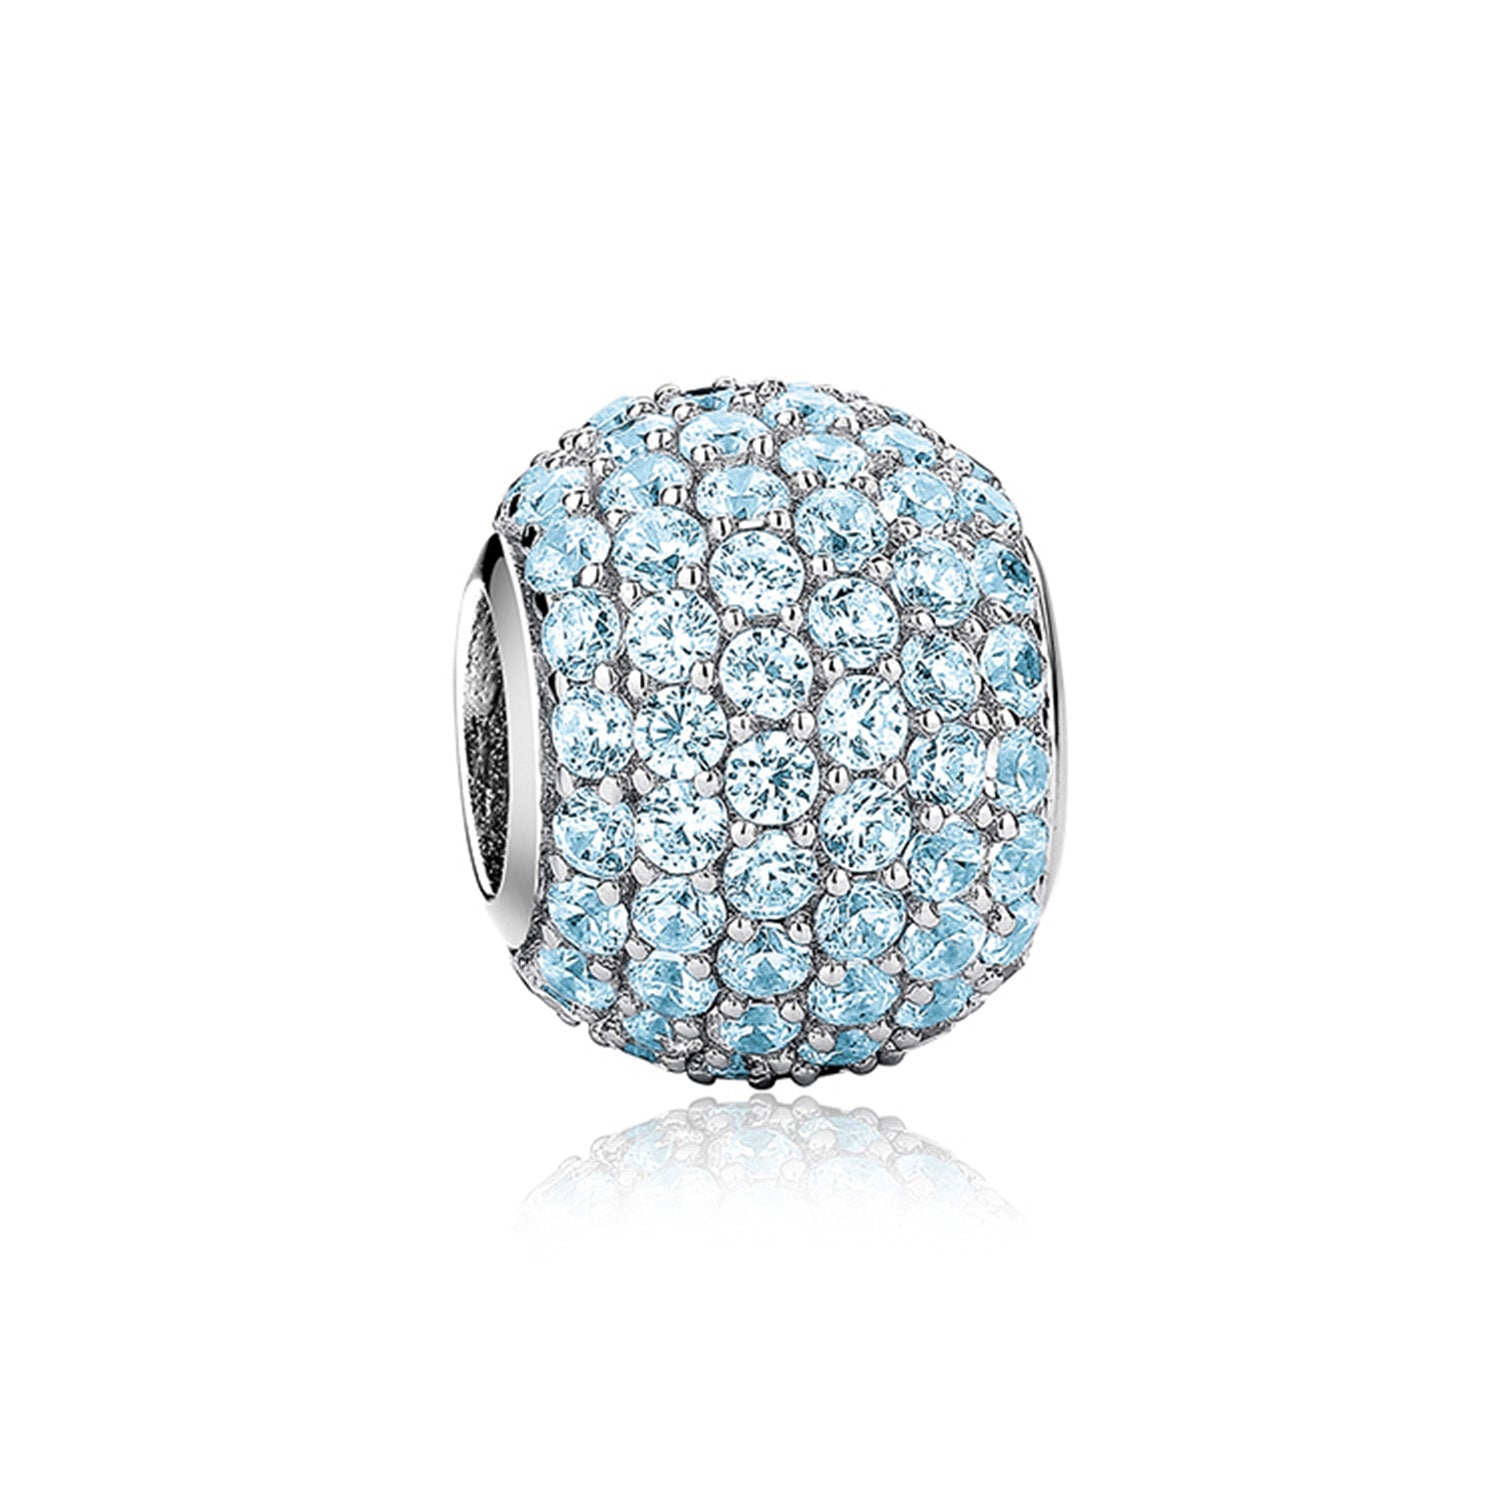 Jewdii 密鑲球淺藍色方晶鋯石 925 純銀吊飾適合手鍊或項鍊